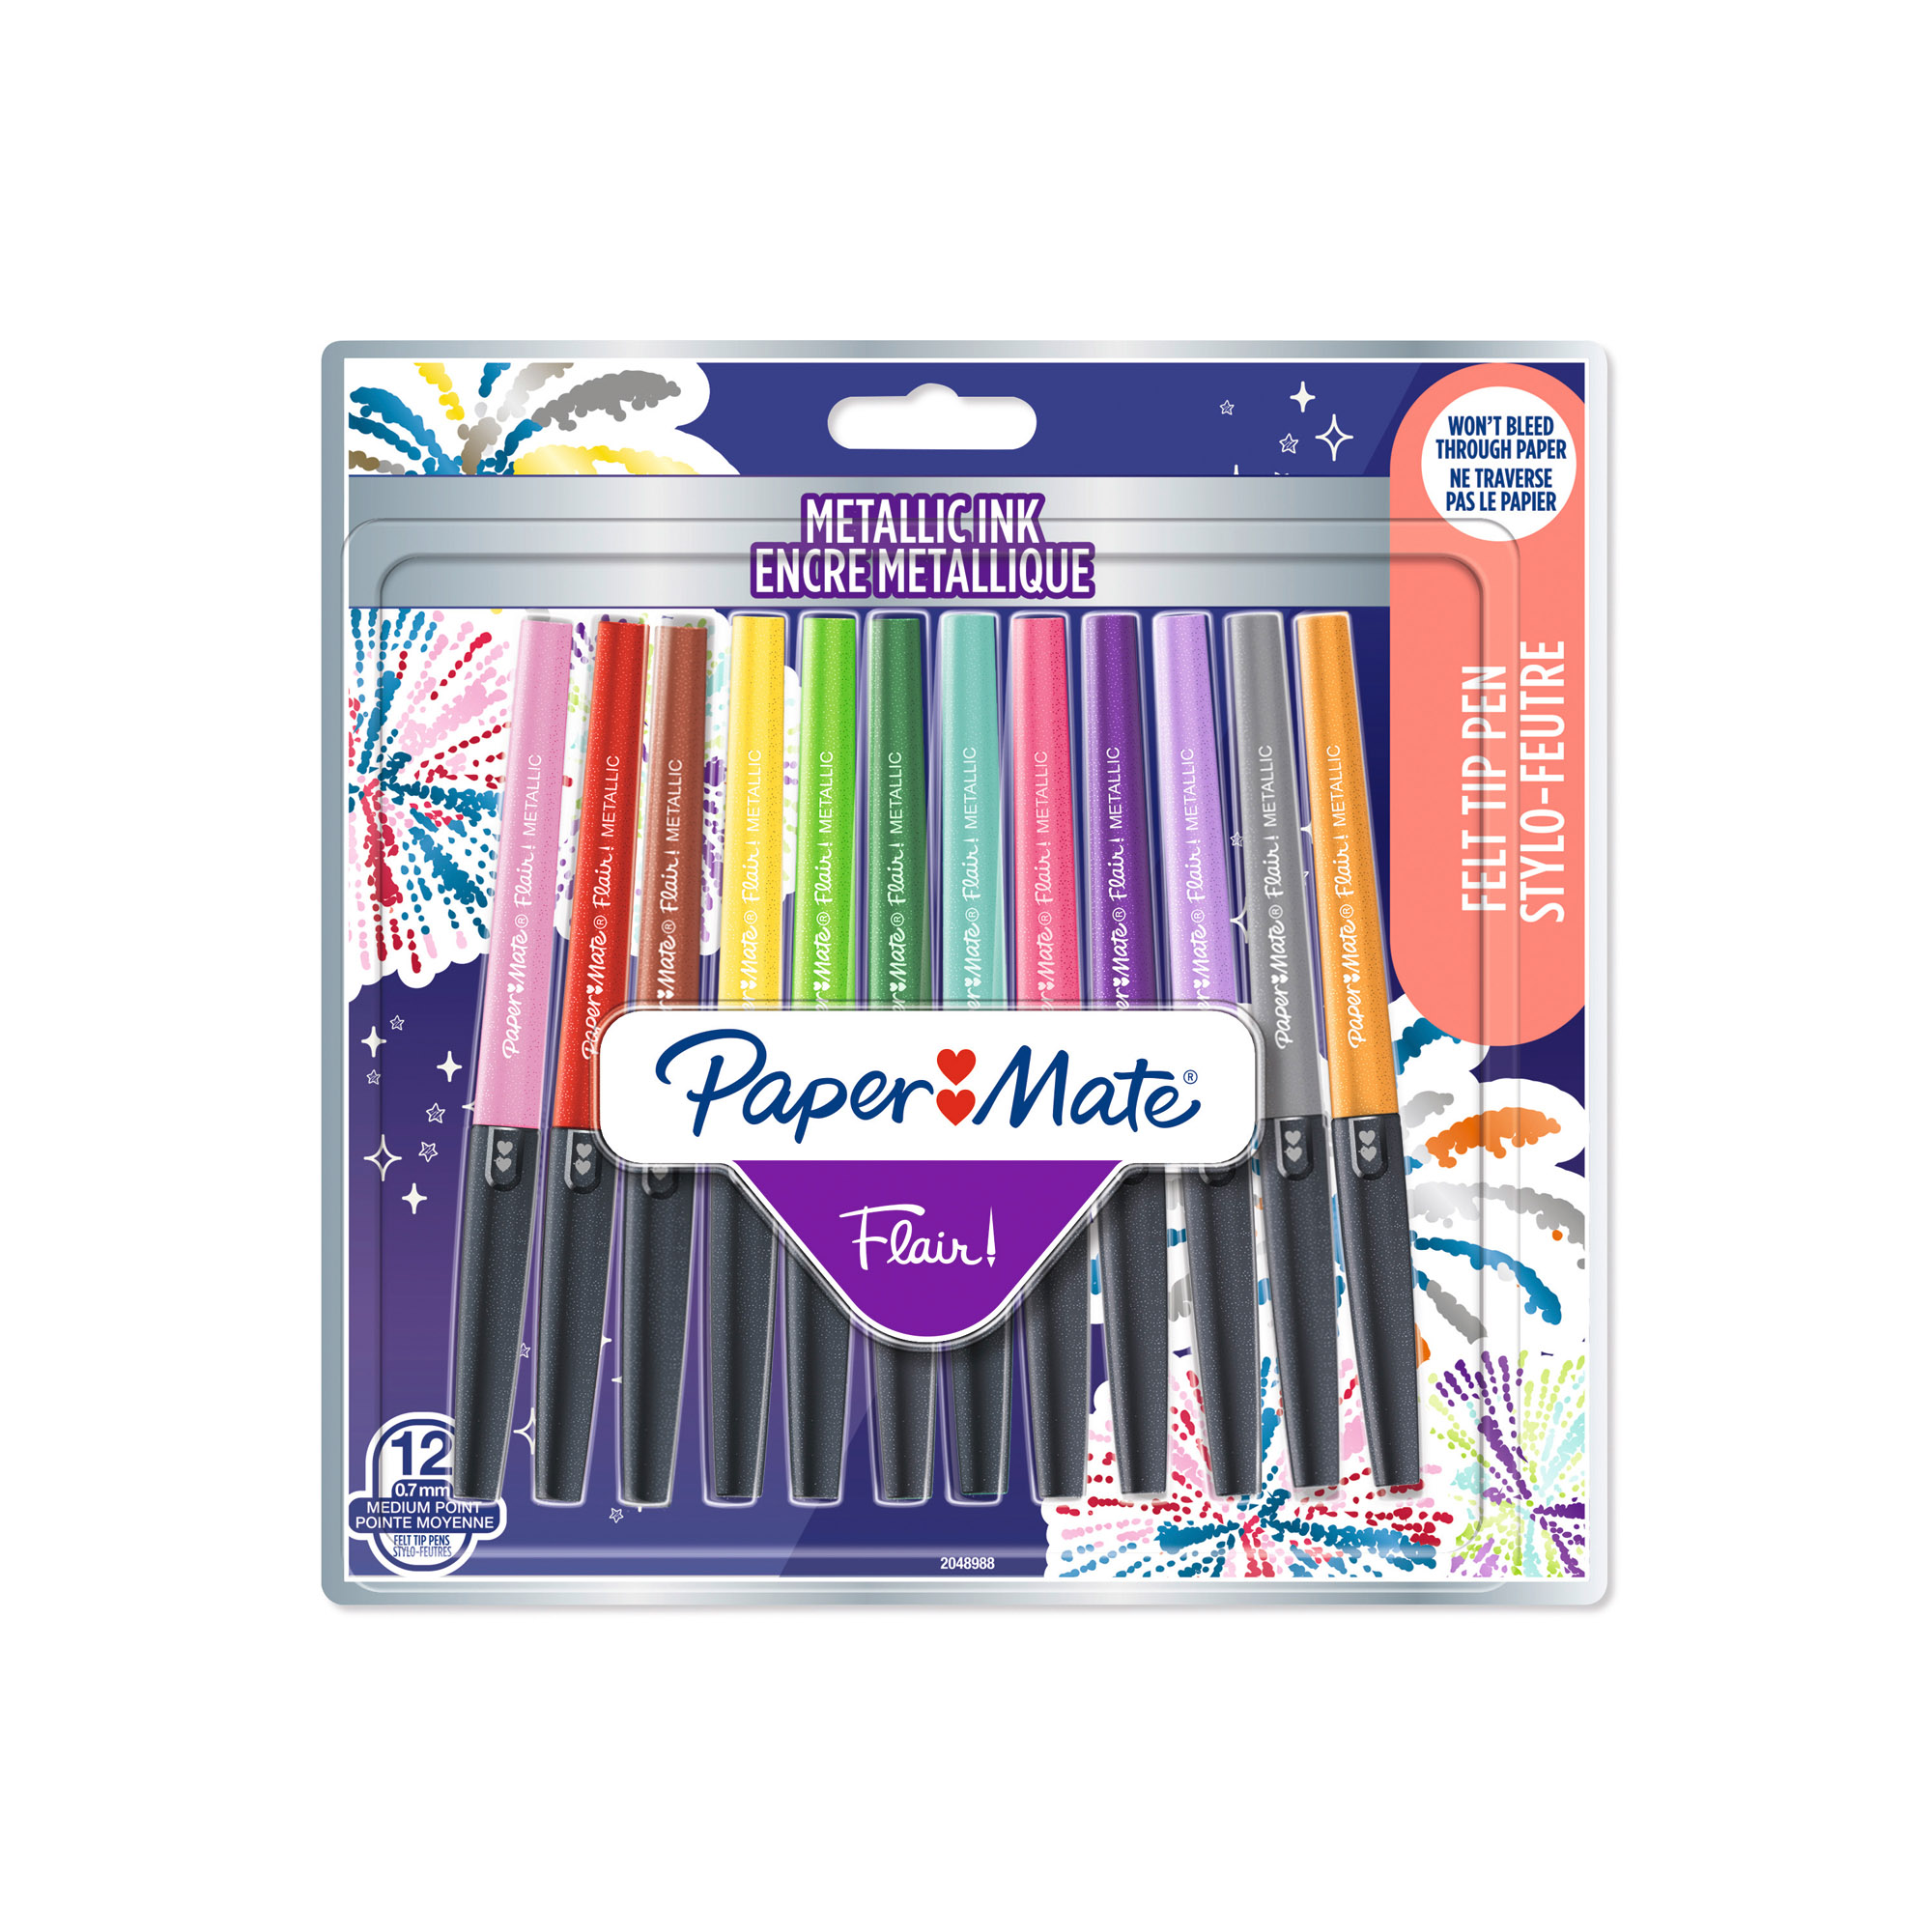 STABILO Lot de 18 stylos feutres Fluo - Fineliner point 88 Mini